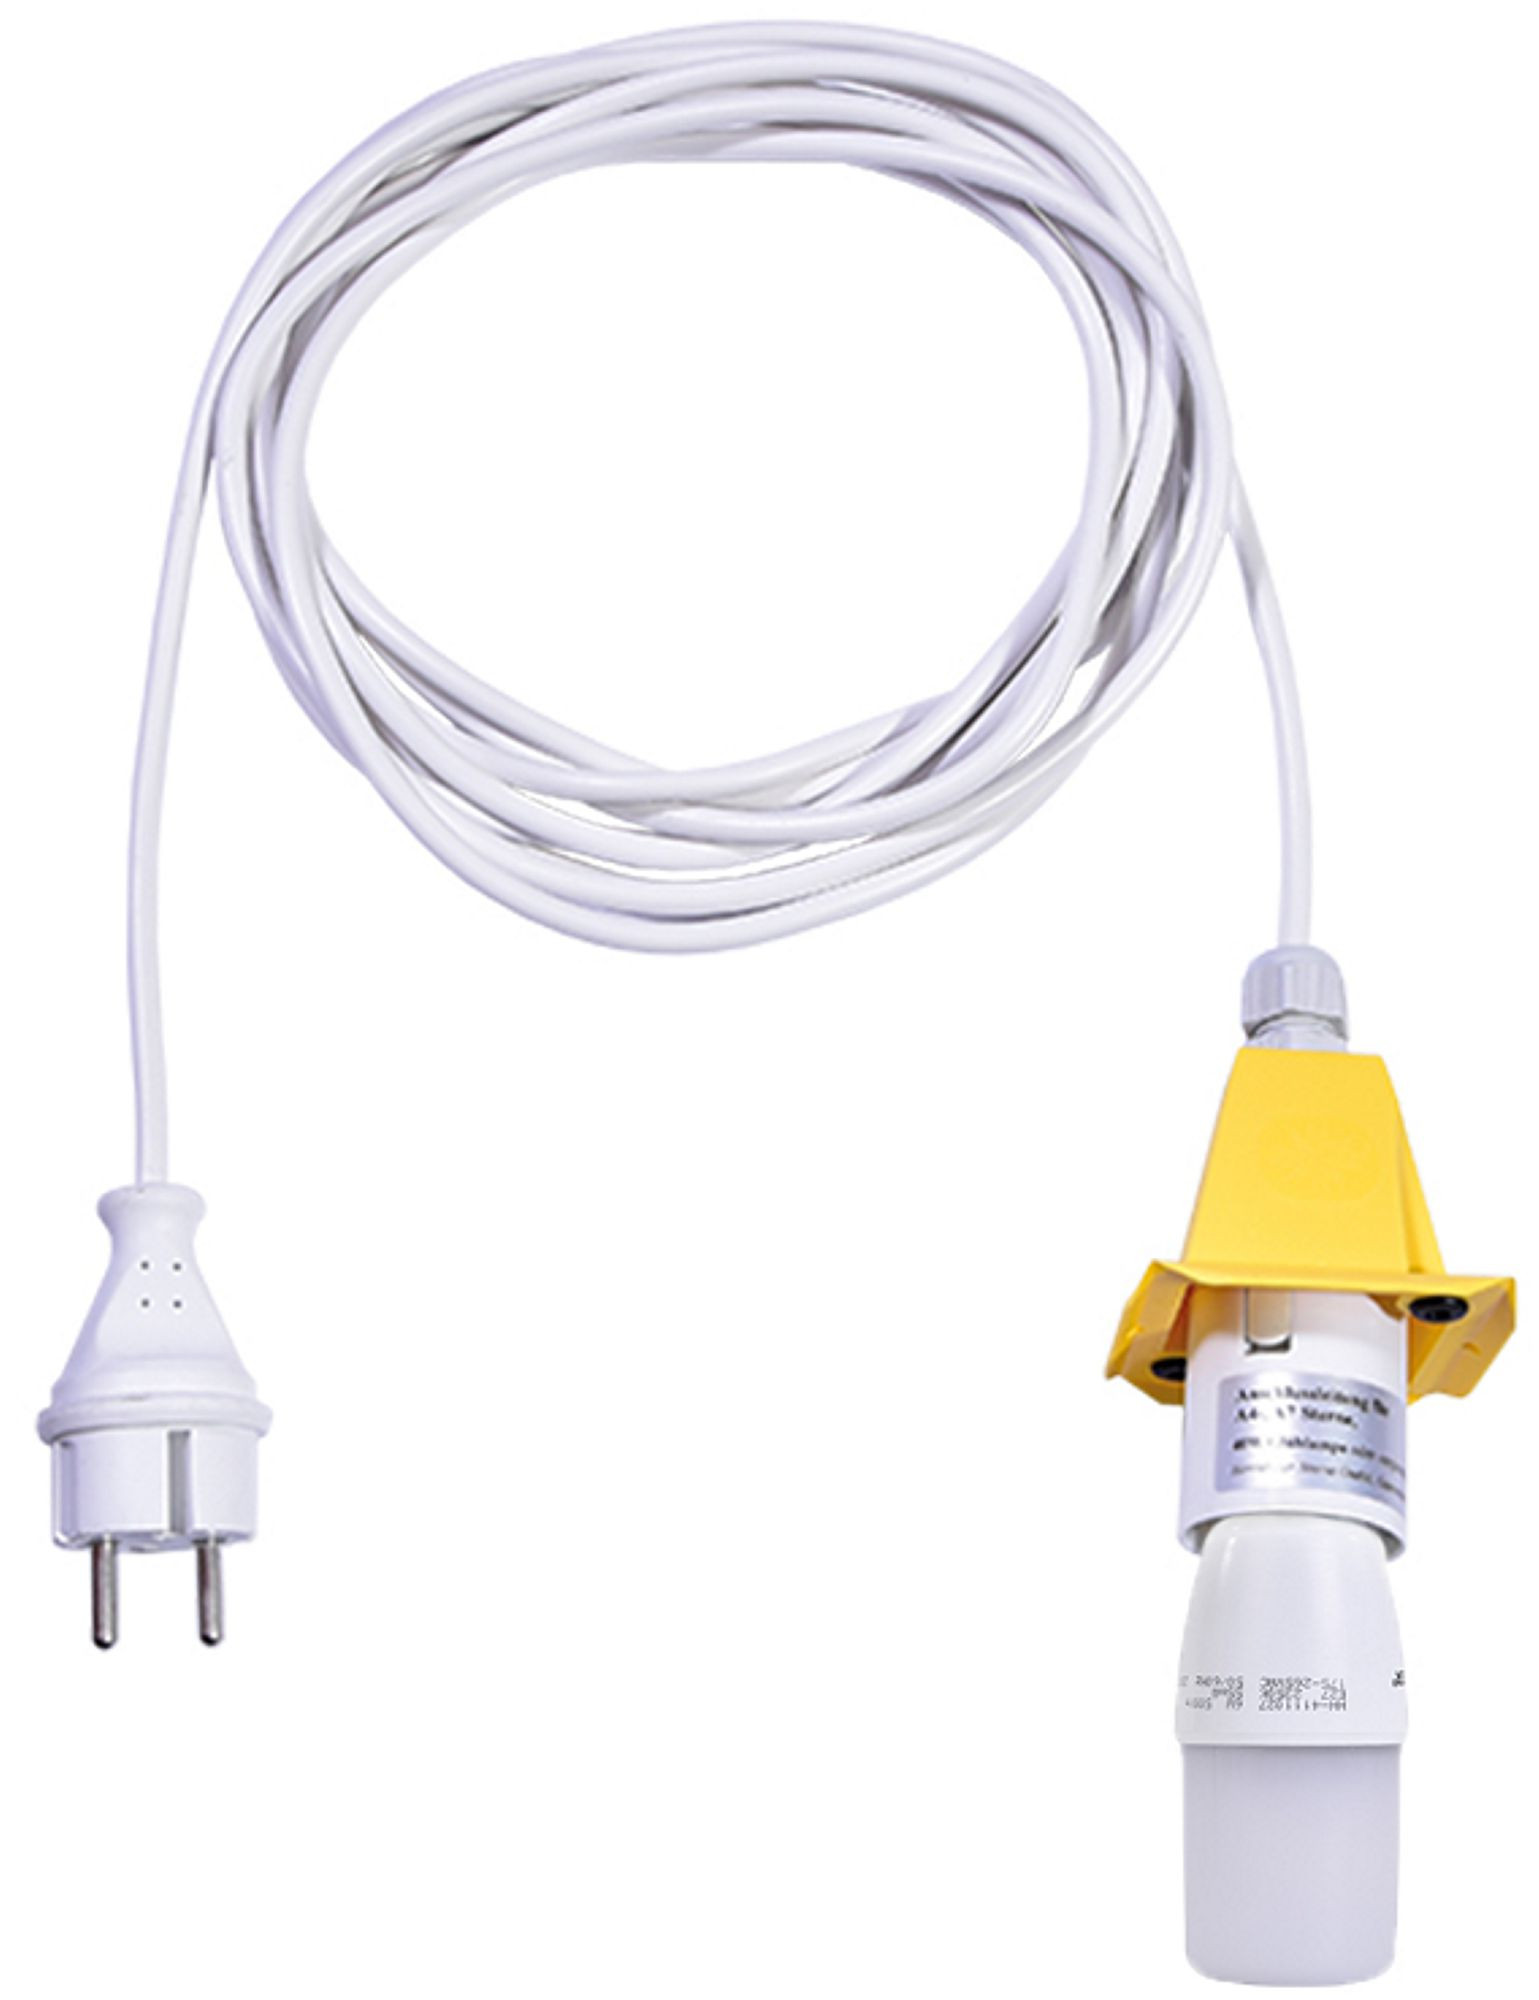 Kabel für A4/A7 - weißes Kabel 5m, Deckel gelb